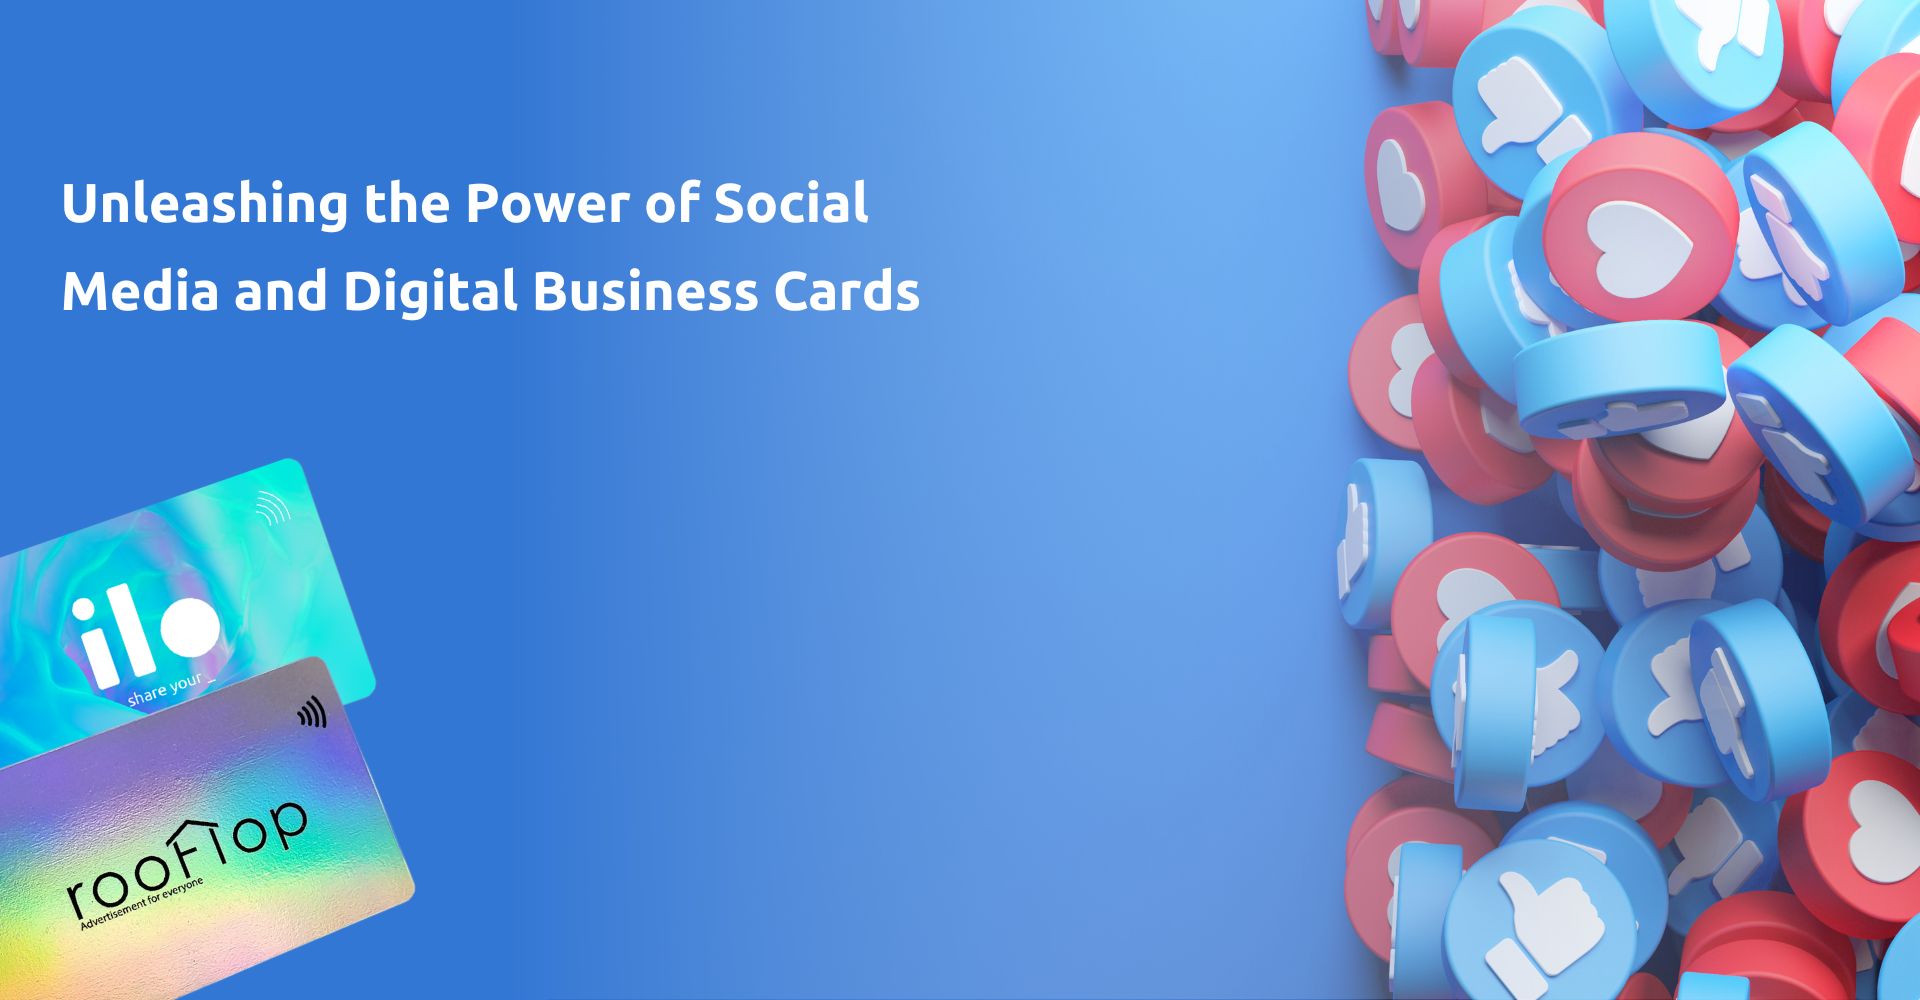 Οι δυνατότητες των Μέσων Κοινωνικής δικτύωσης και των Ψηφιακών Επαγγελματικών Καρτών